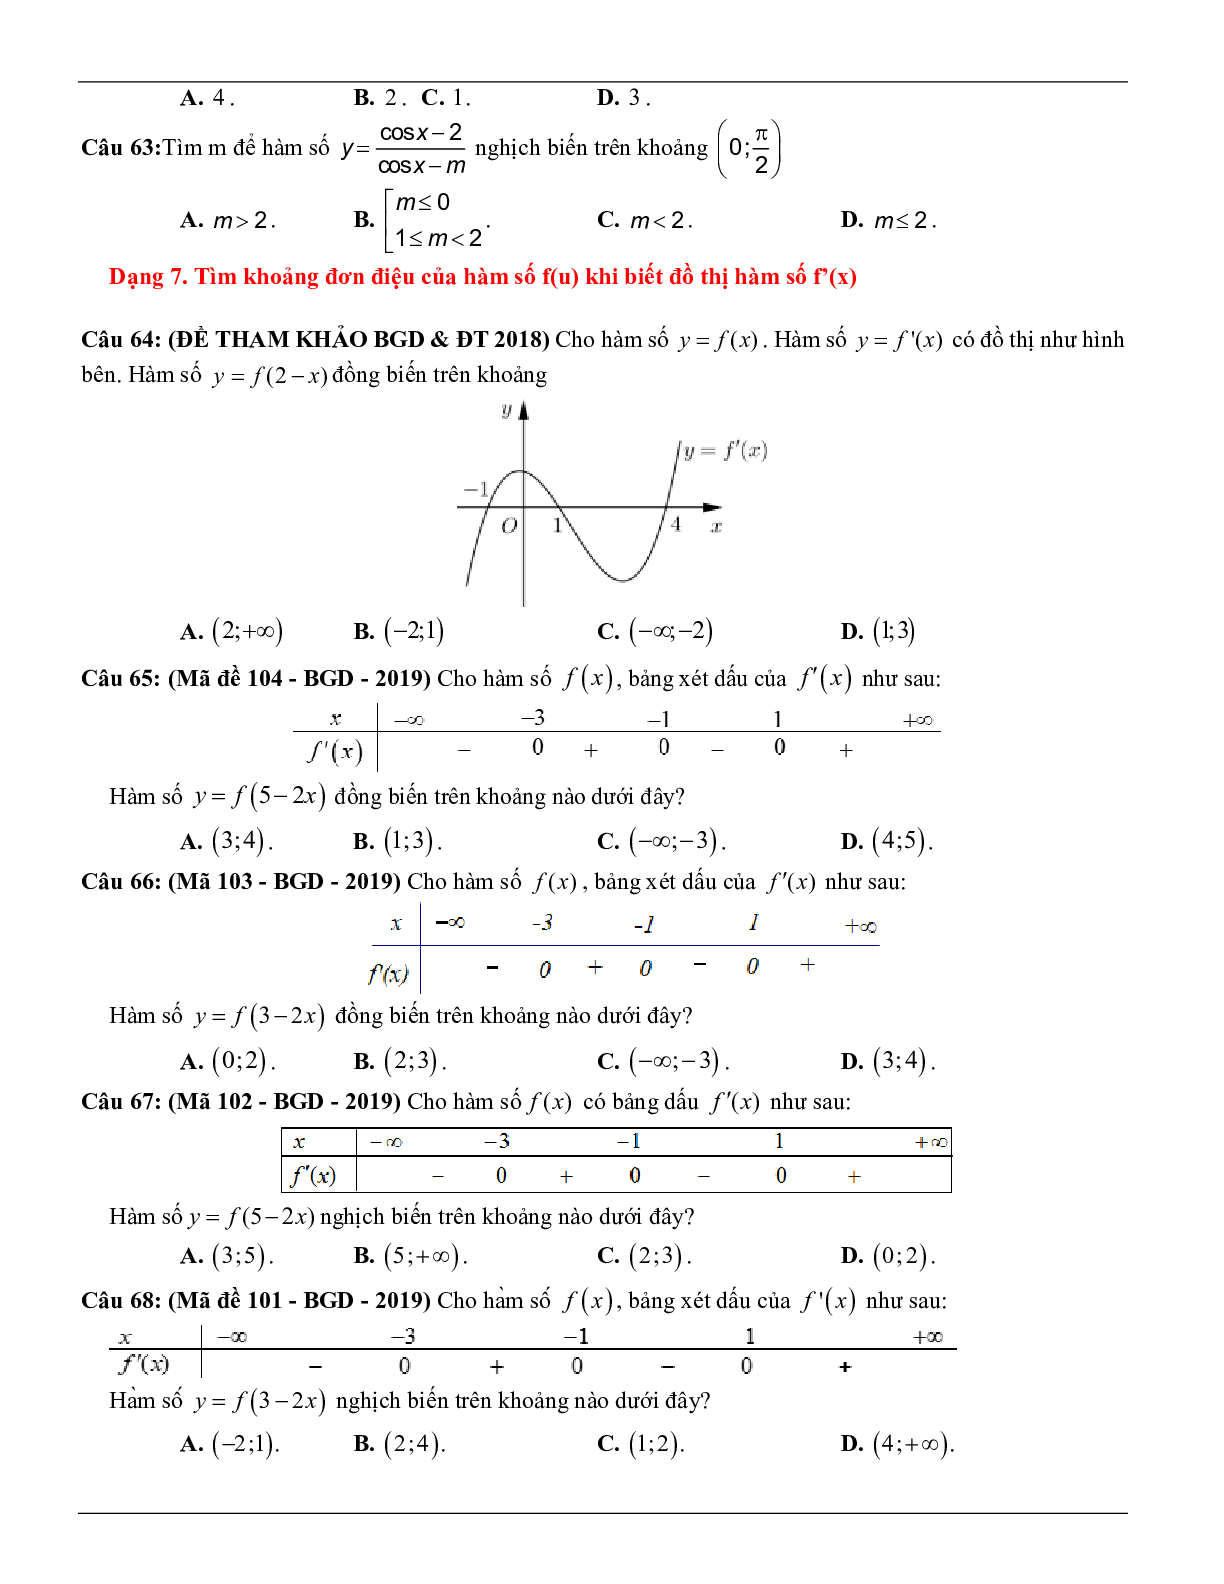 Các dạng toán về tính đơn điệu của hàm số thường gặp trong kỳ thi THPT Quốc gia (trang 9)